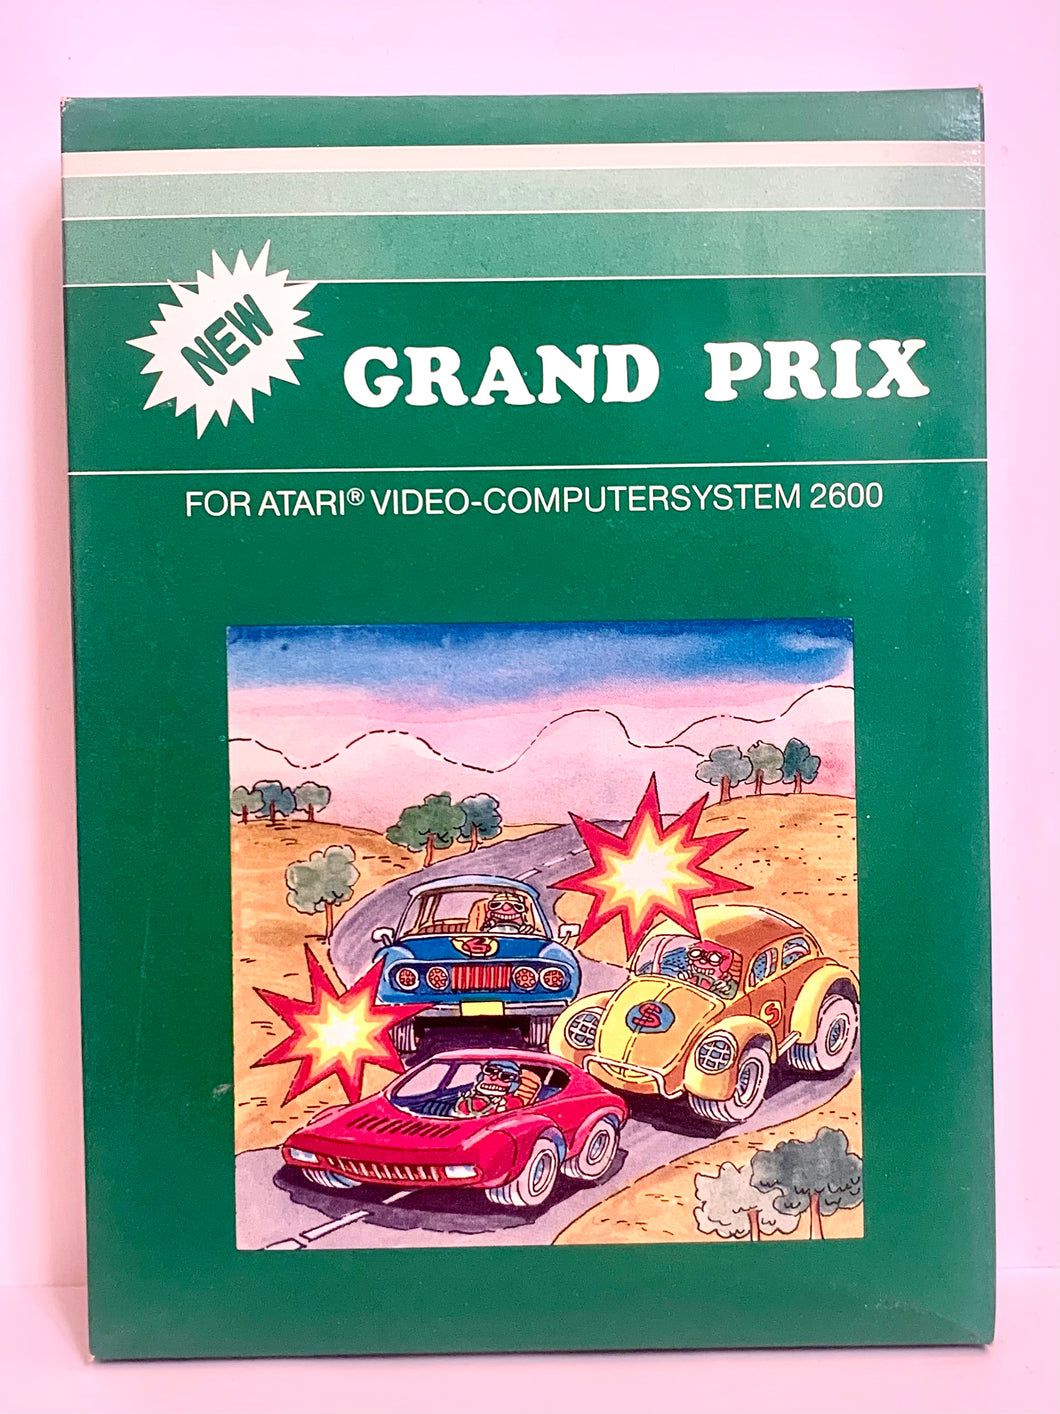 Grand Prix - Atari VCS 2600 - NTSC - CIB